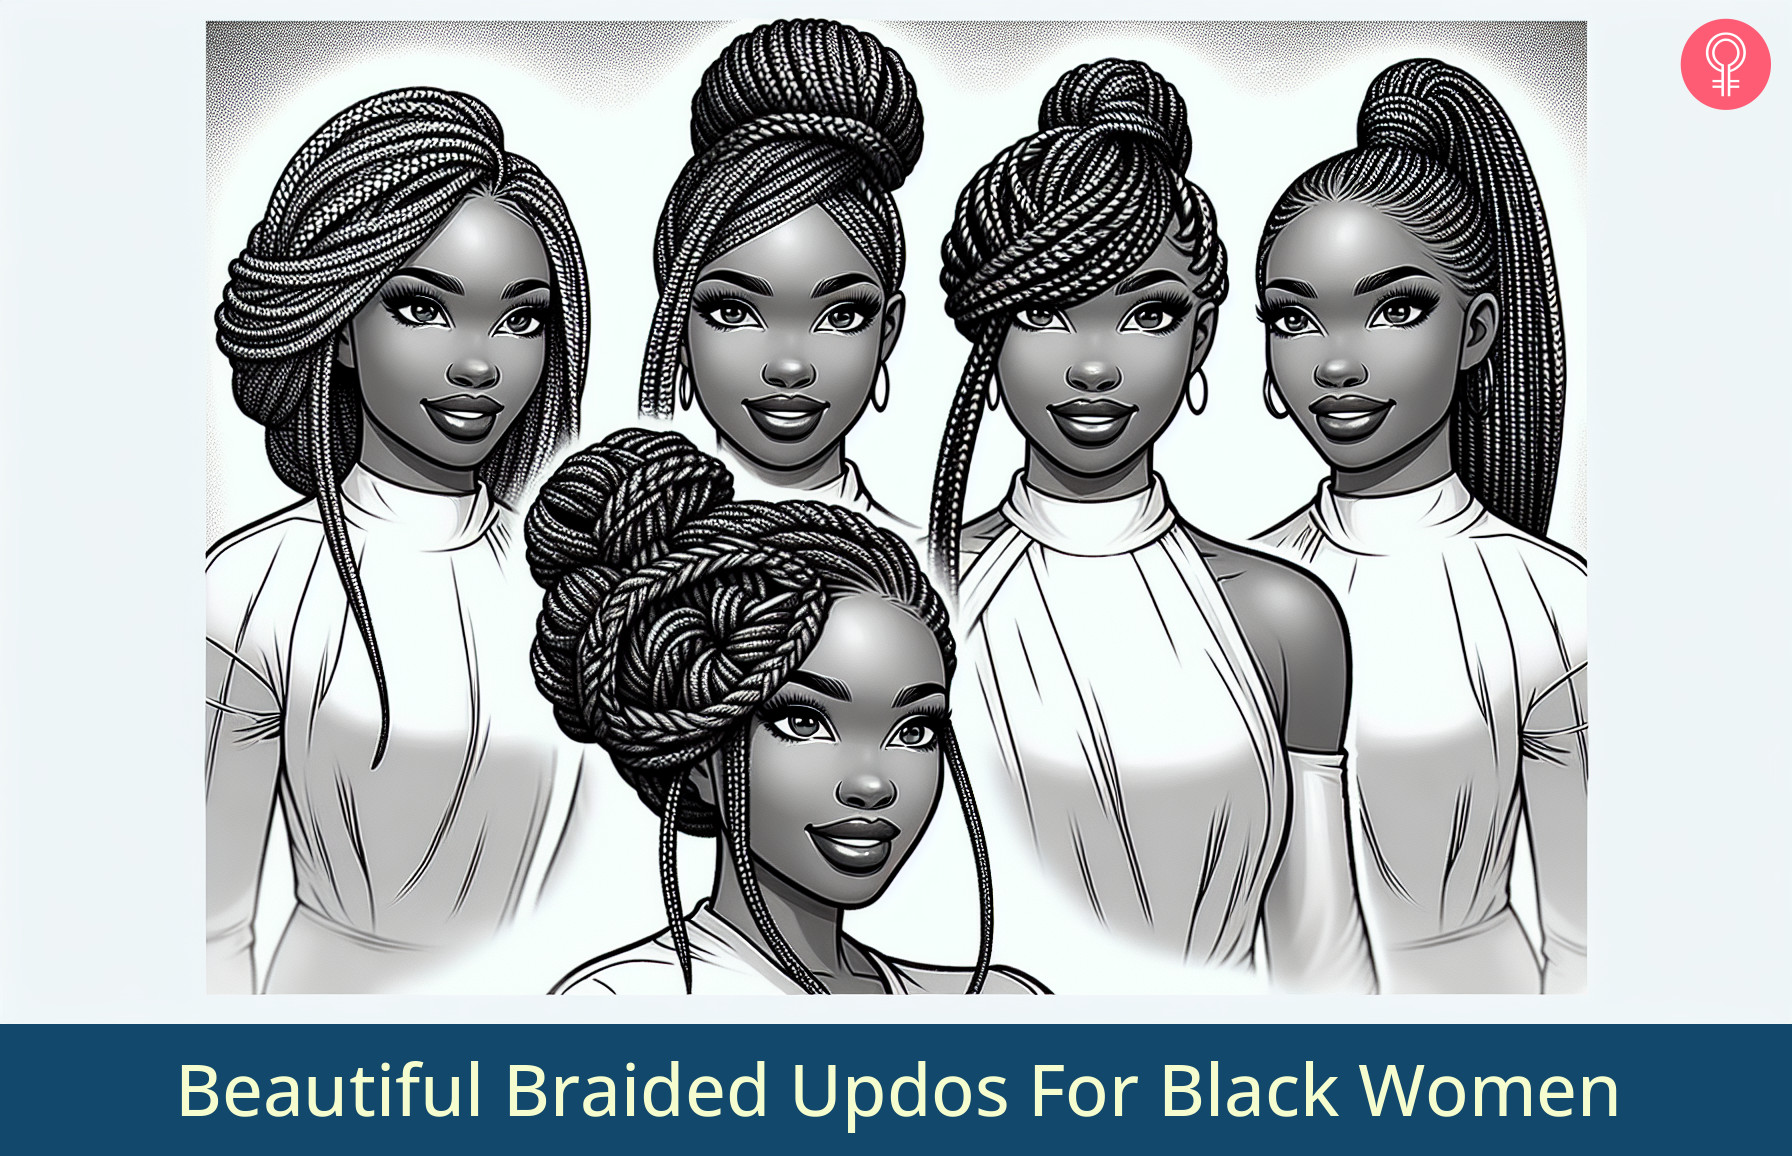 Braided Updos For Black Women_illustration